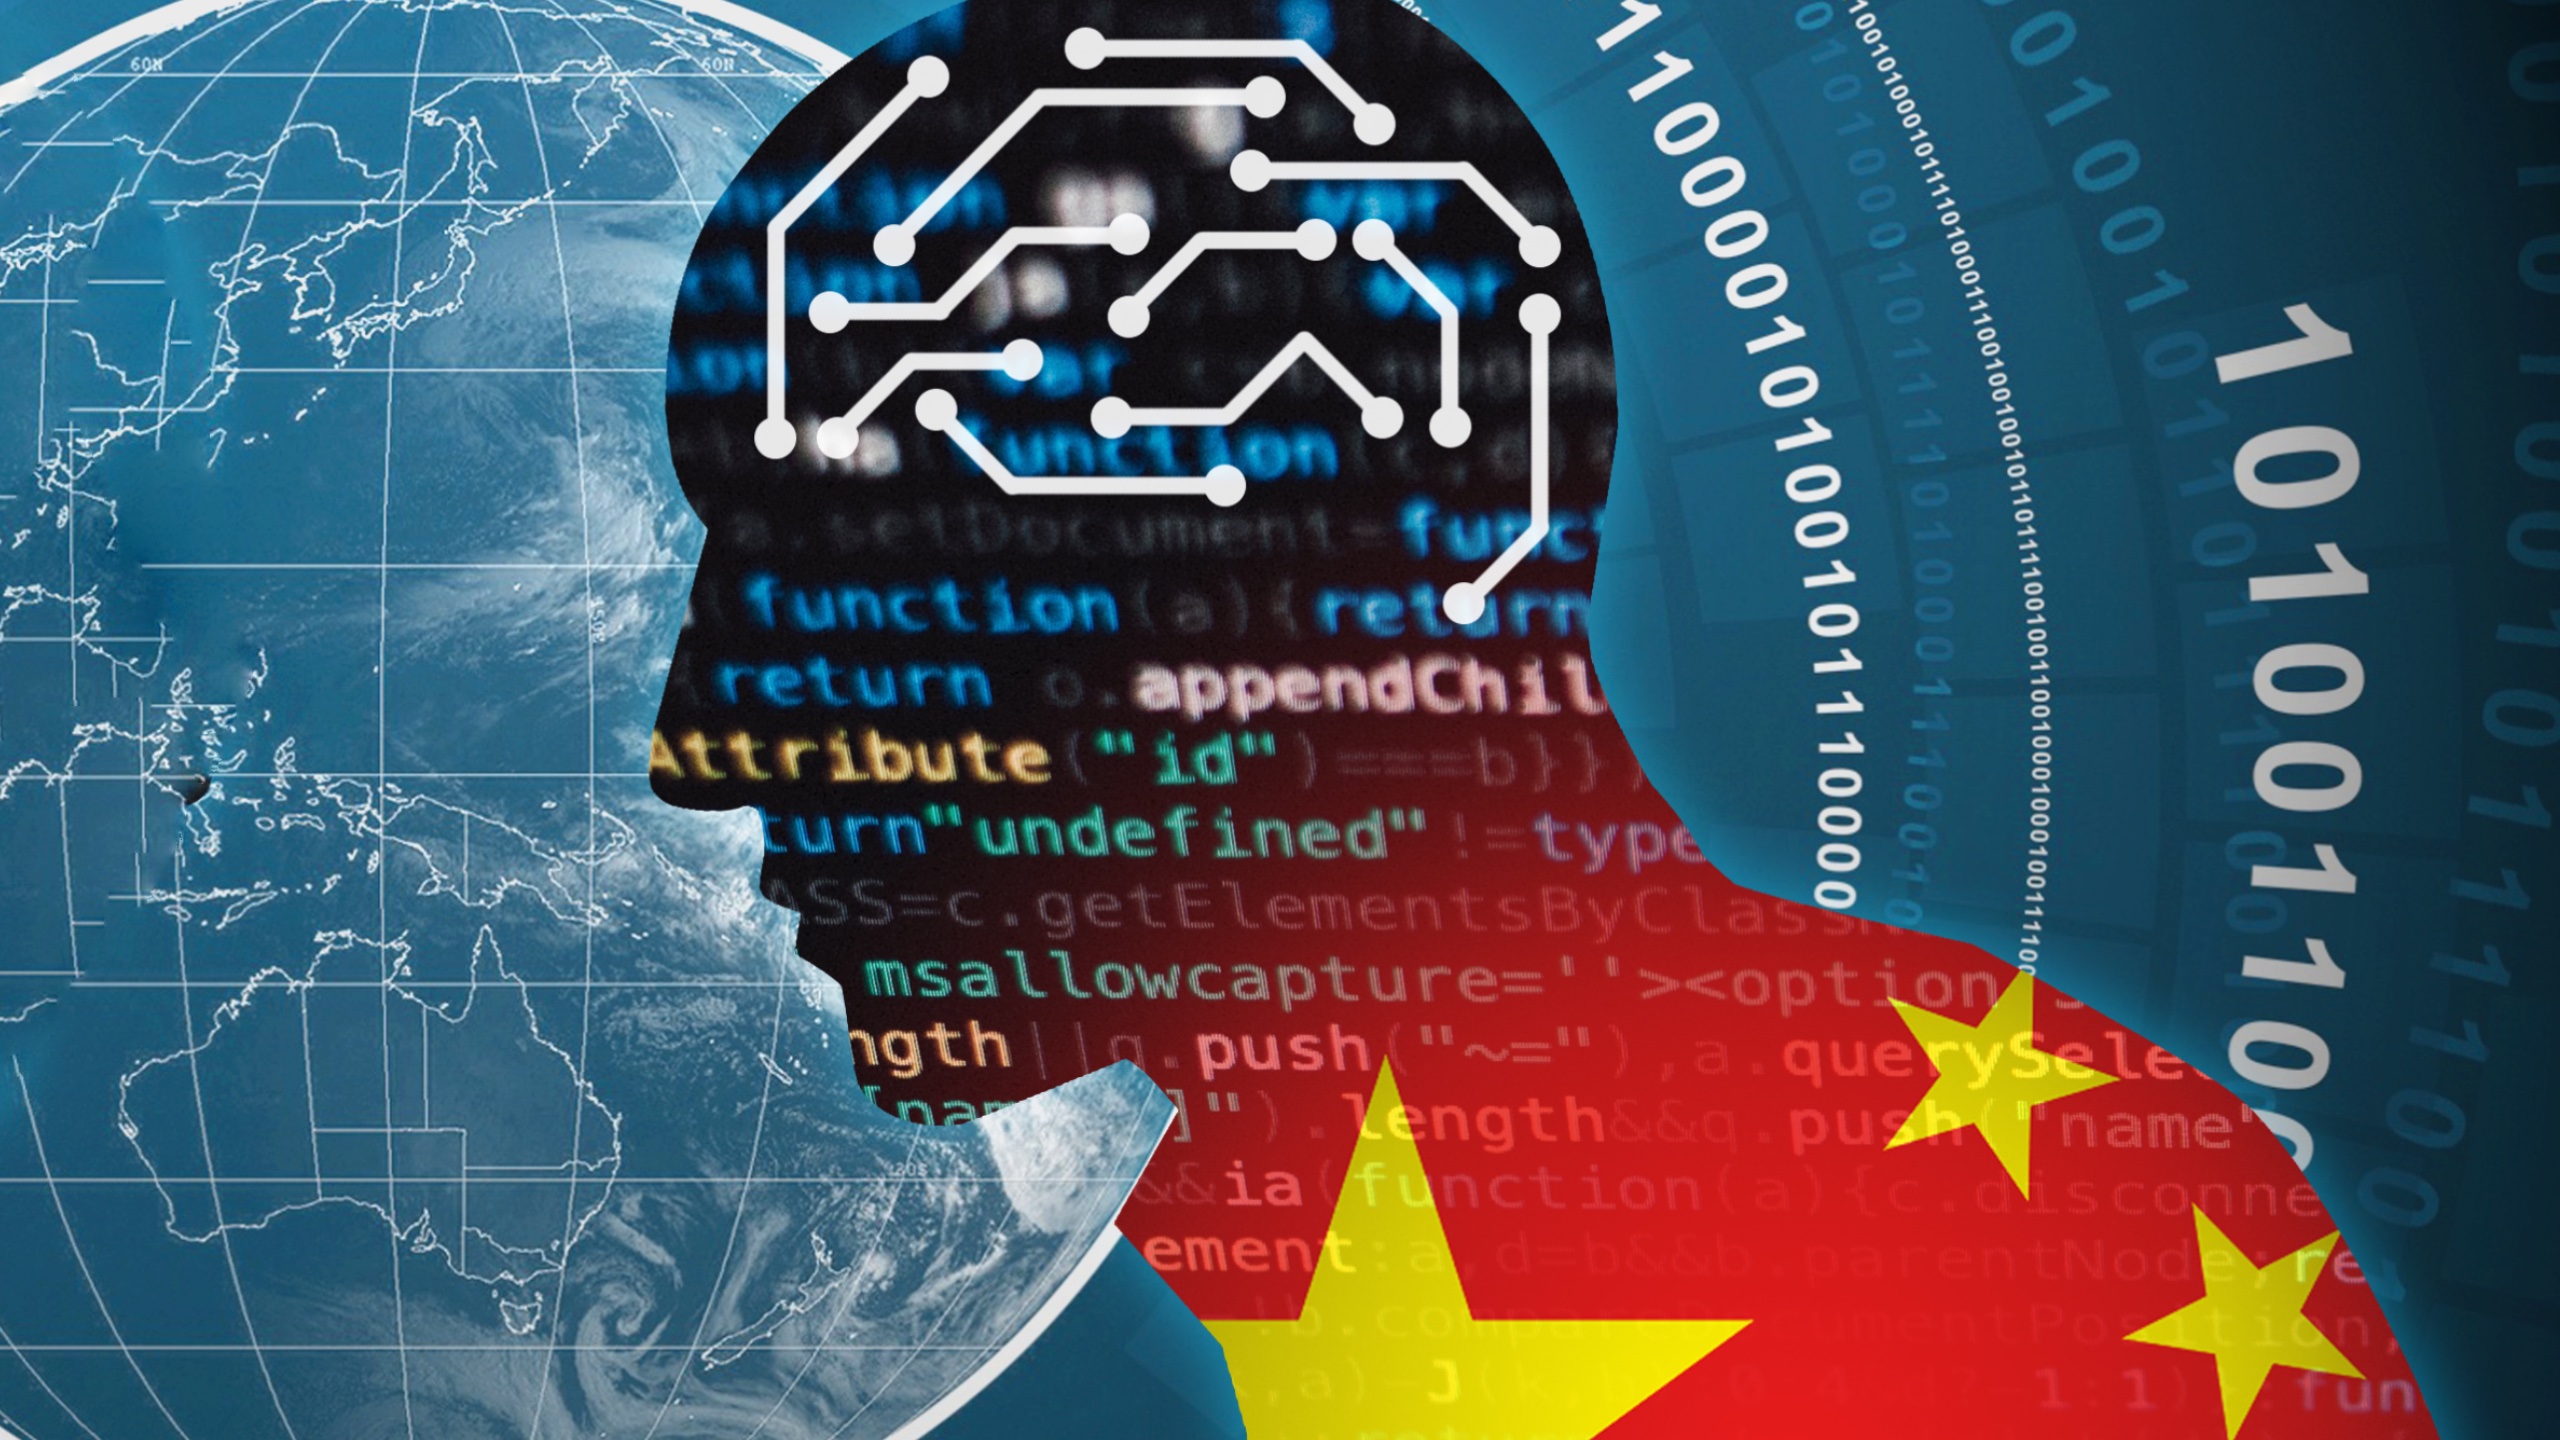 Kitajska pospešuje integracijo AI z več kot 40 odobrenimi modeli